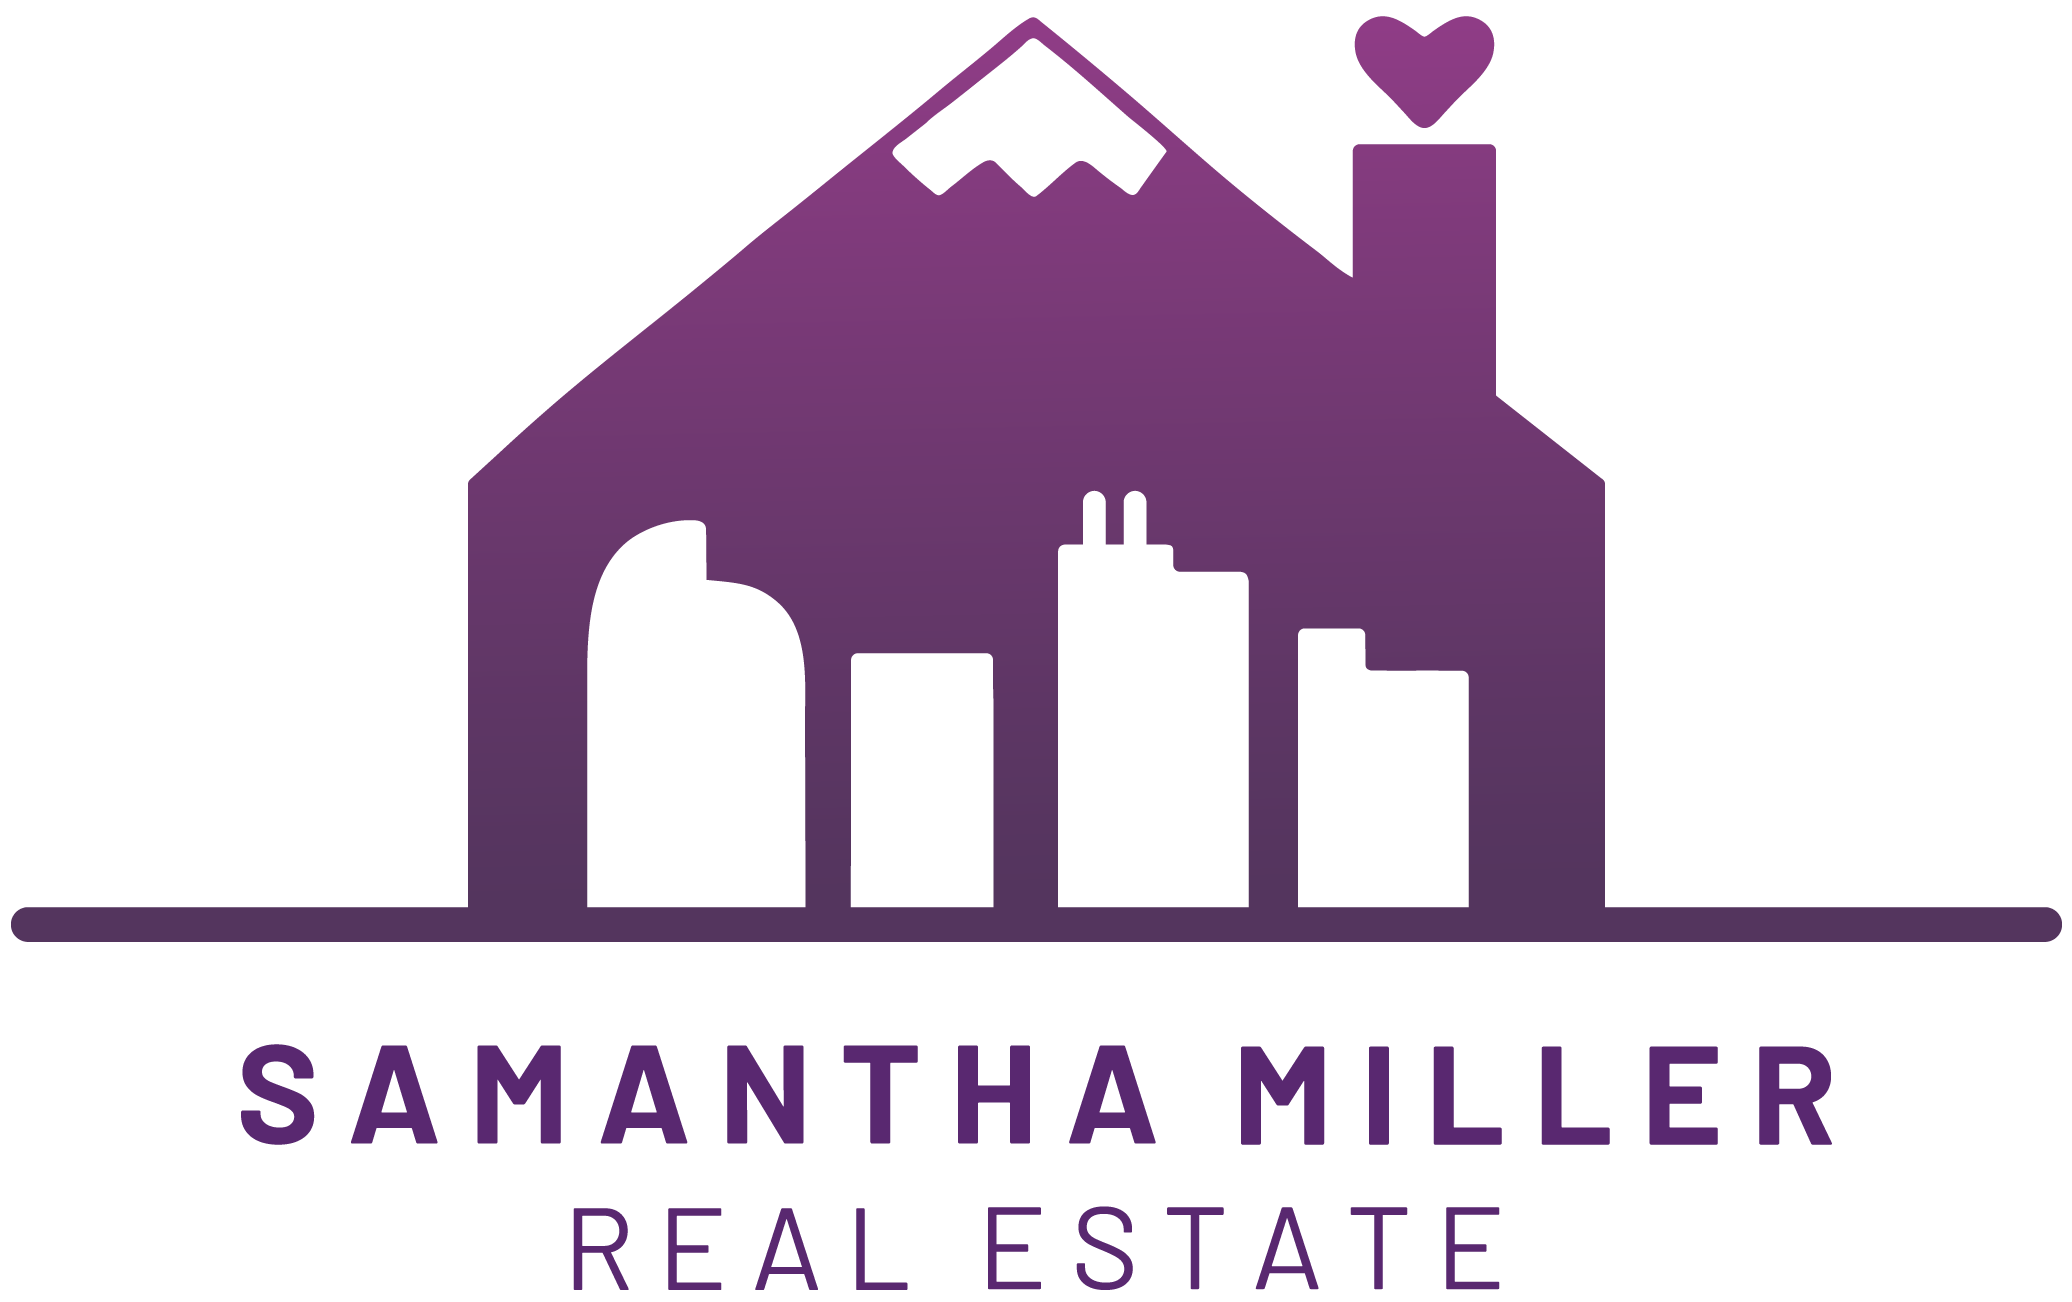 Sam Miller Real Estate